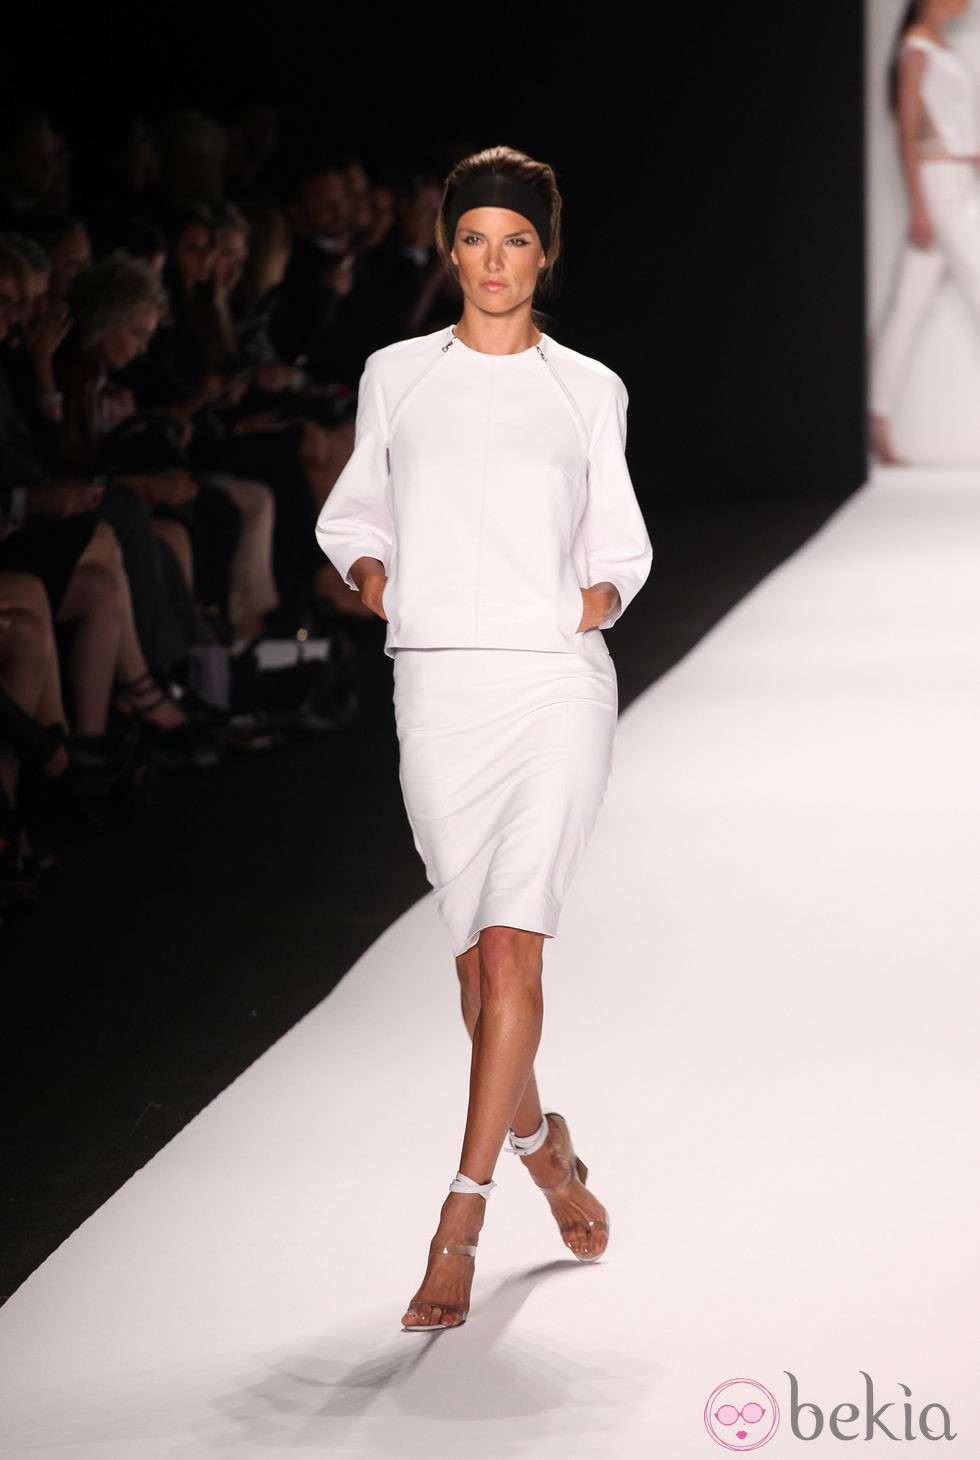 Alessandra Ambrosio desfilando para KaufmanFranco primavera/verano 2014  de la Semana de la Moda de Nueva York